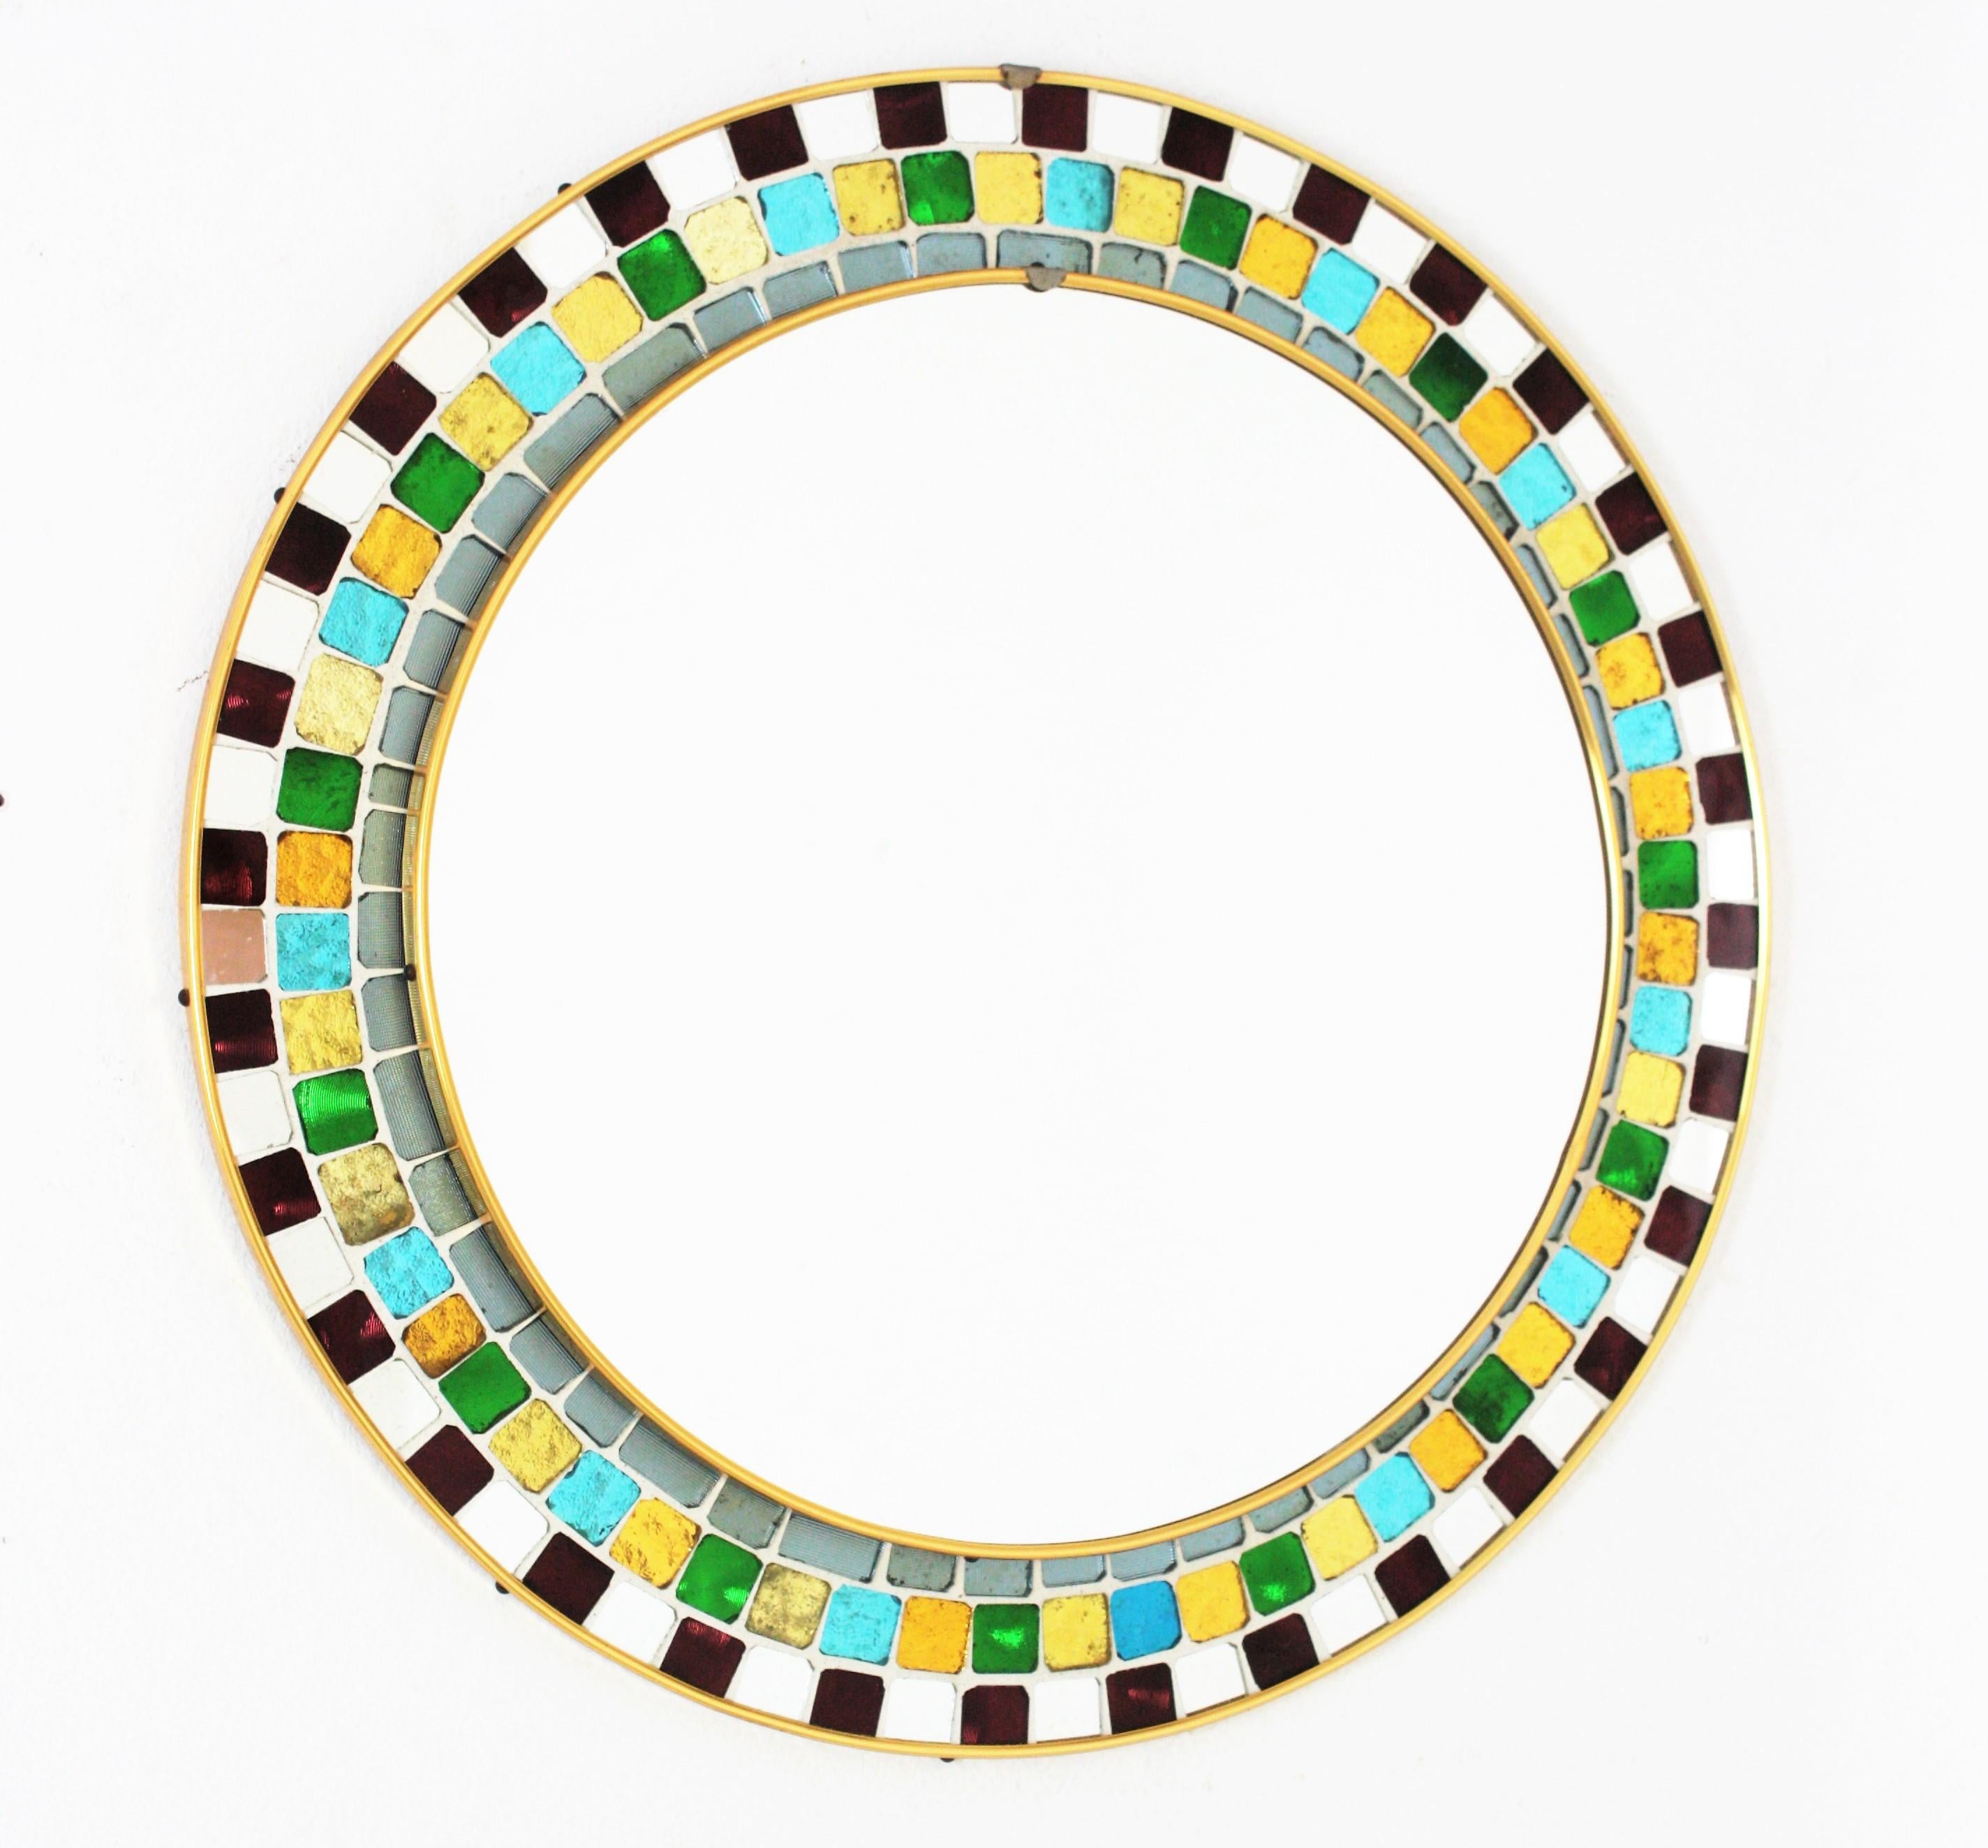 Spanischer runder Mosaikspiegel aus der Mitte des Jahrhunderts, umrahmt mit mehrfarbigen Glasfliesen. Spanien, 1960er Jahre.
Dieser wunderschöne Mid-Century Modern-Spiegel zeigt ein Fliesenmosaik mit kleinen Stücken aus strukturiertem, irisierendem